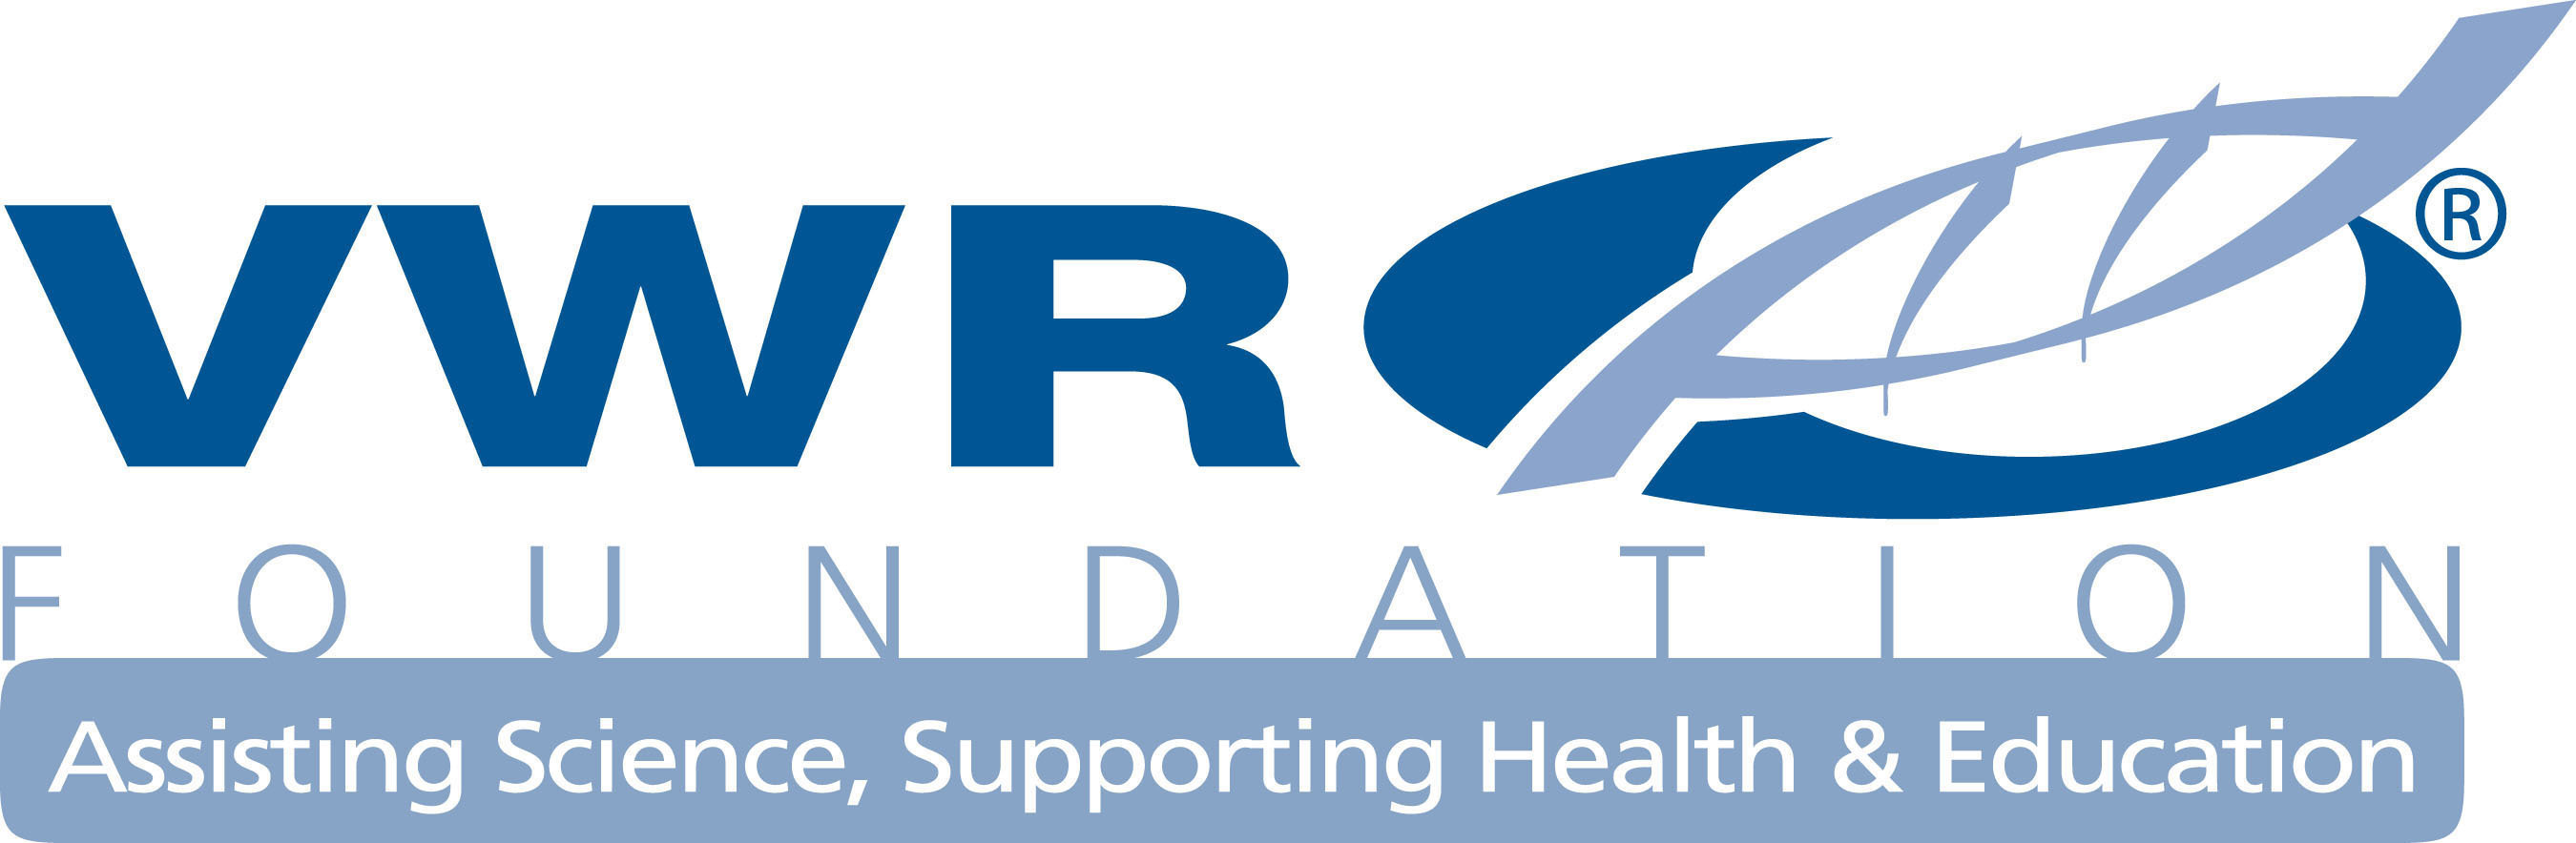 VWR Foundation logo.